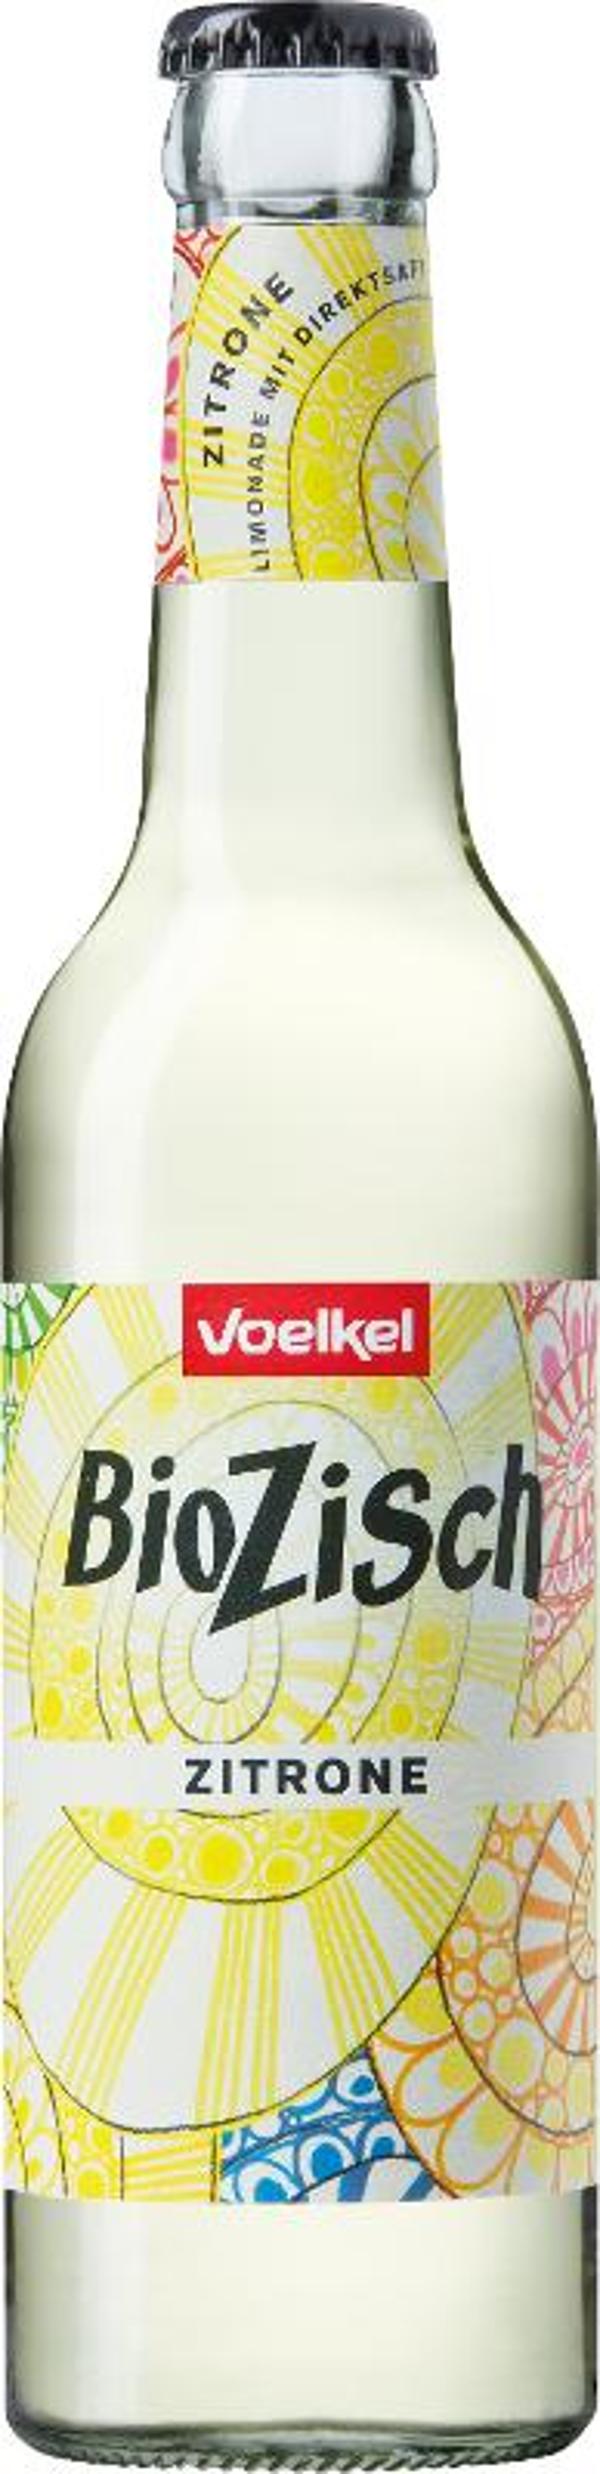 Produktfoto zu BioZisch Zitrone 0,33l Flasche